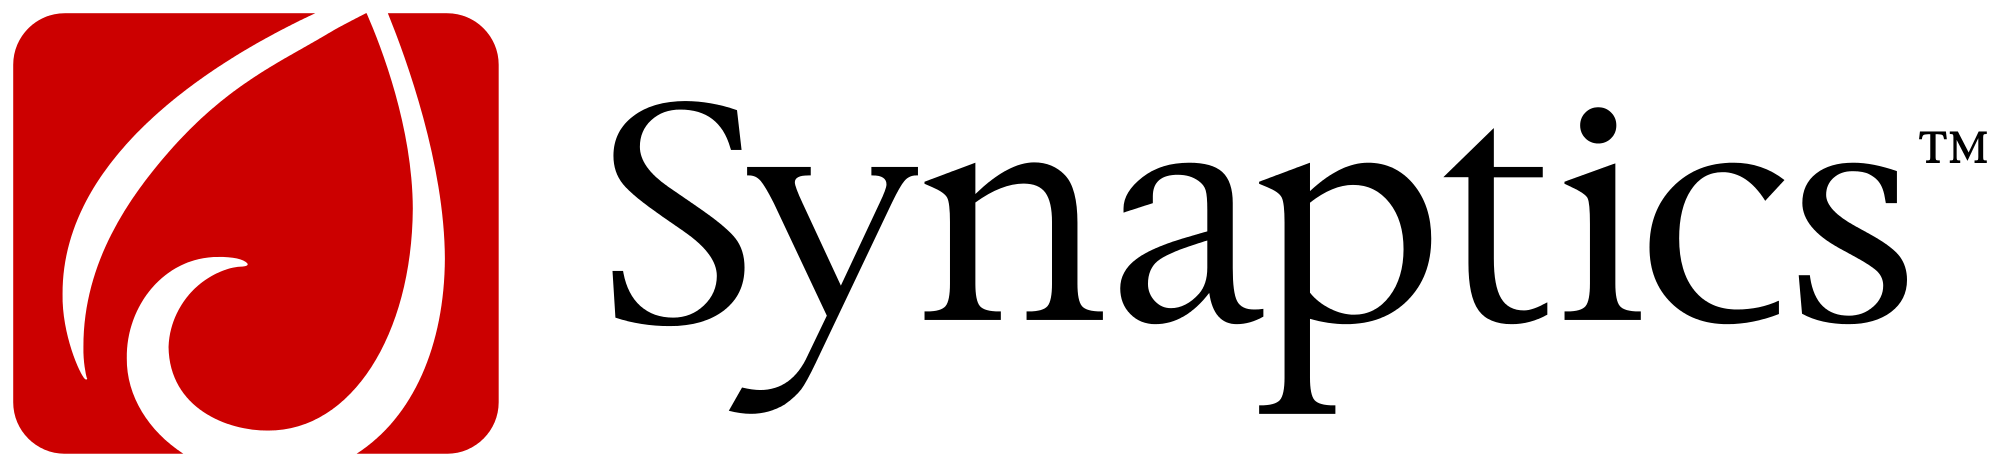 Synaptics Logo - File:Synaptics logo.svg - Wikimedia Commons